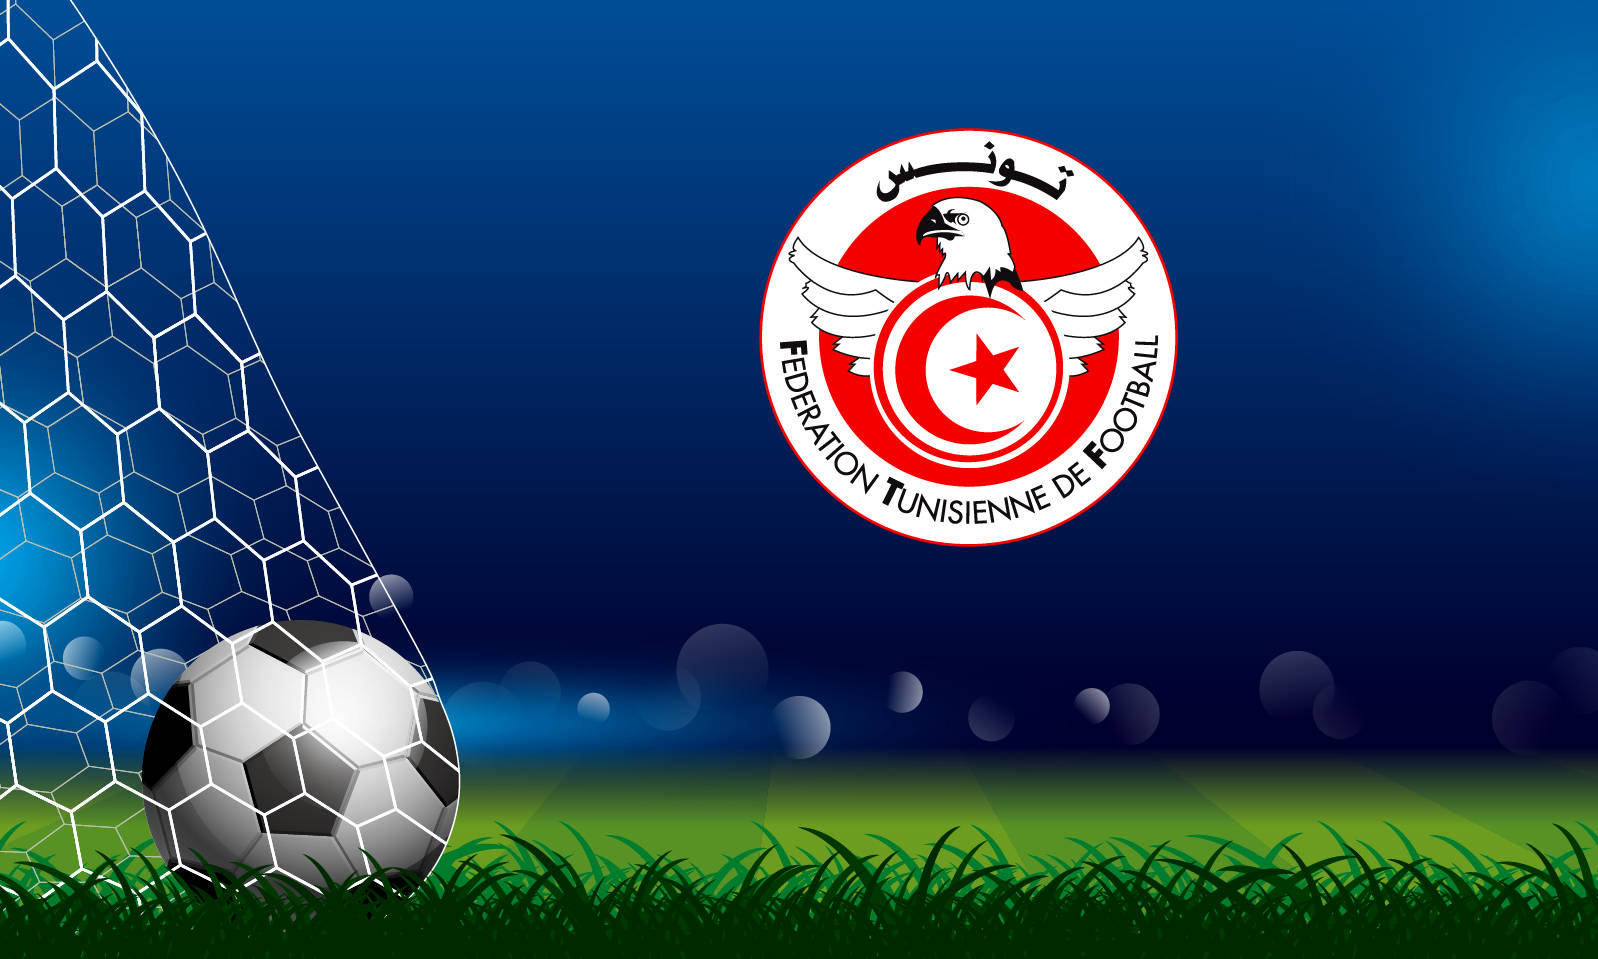 Tunisiskanationalfotbollslagets Emblem På Fotbollsplanen. Wallpaper